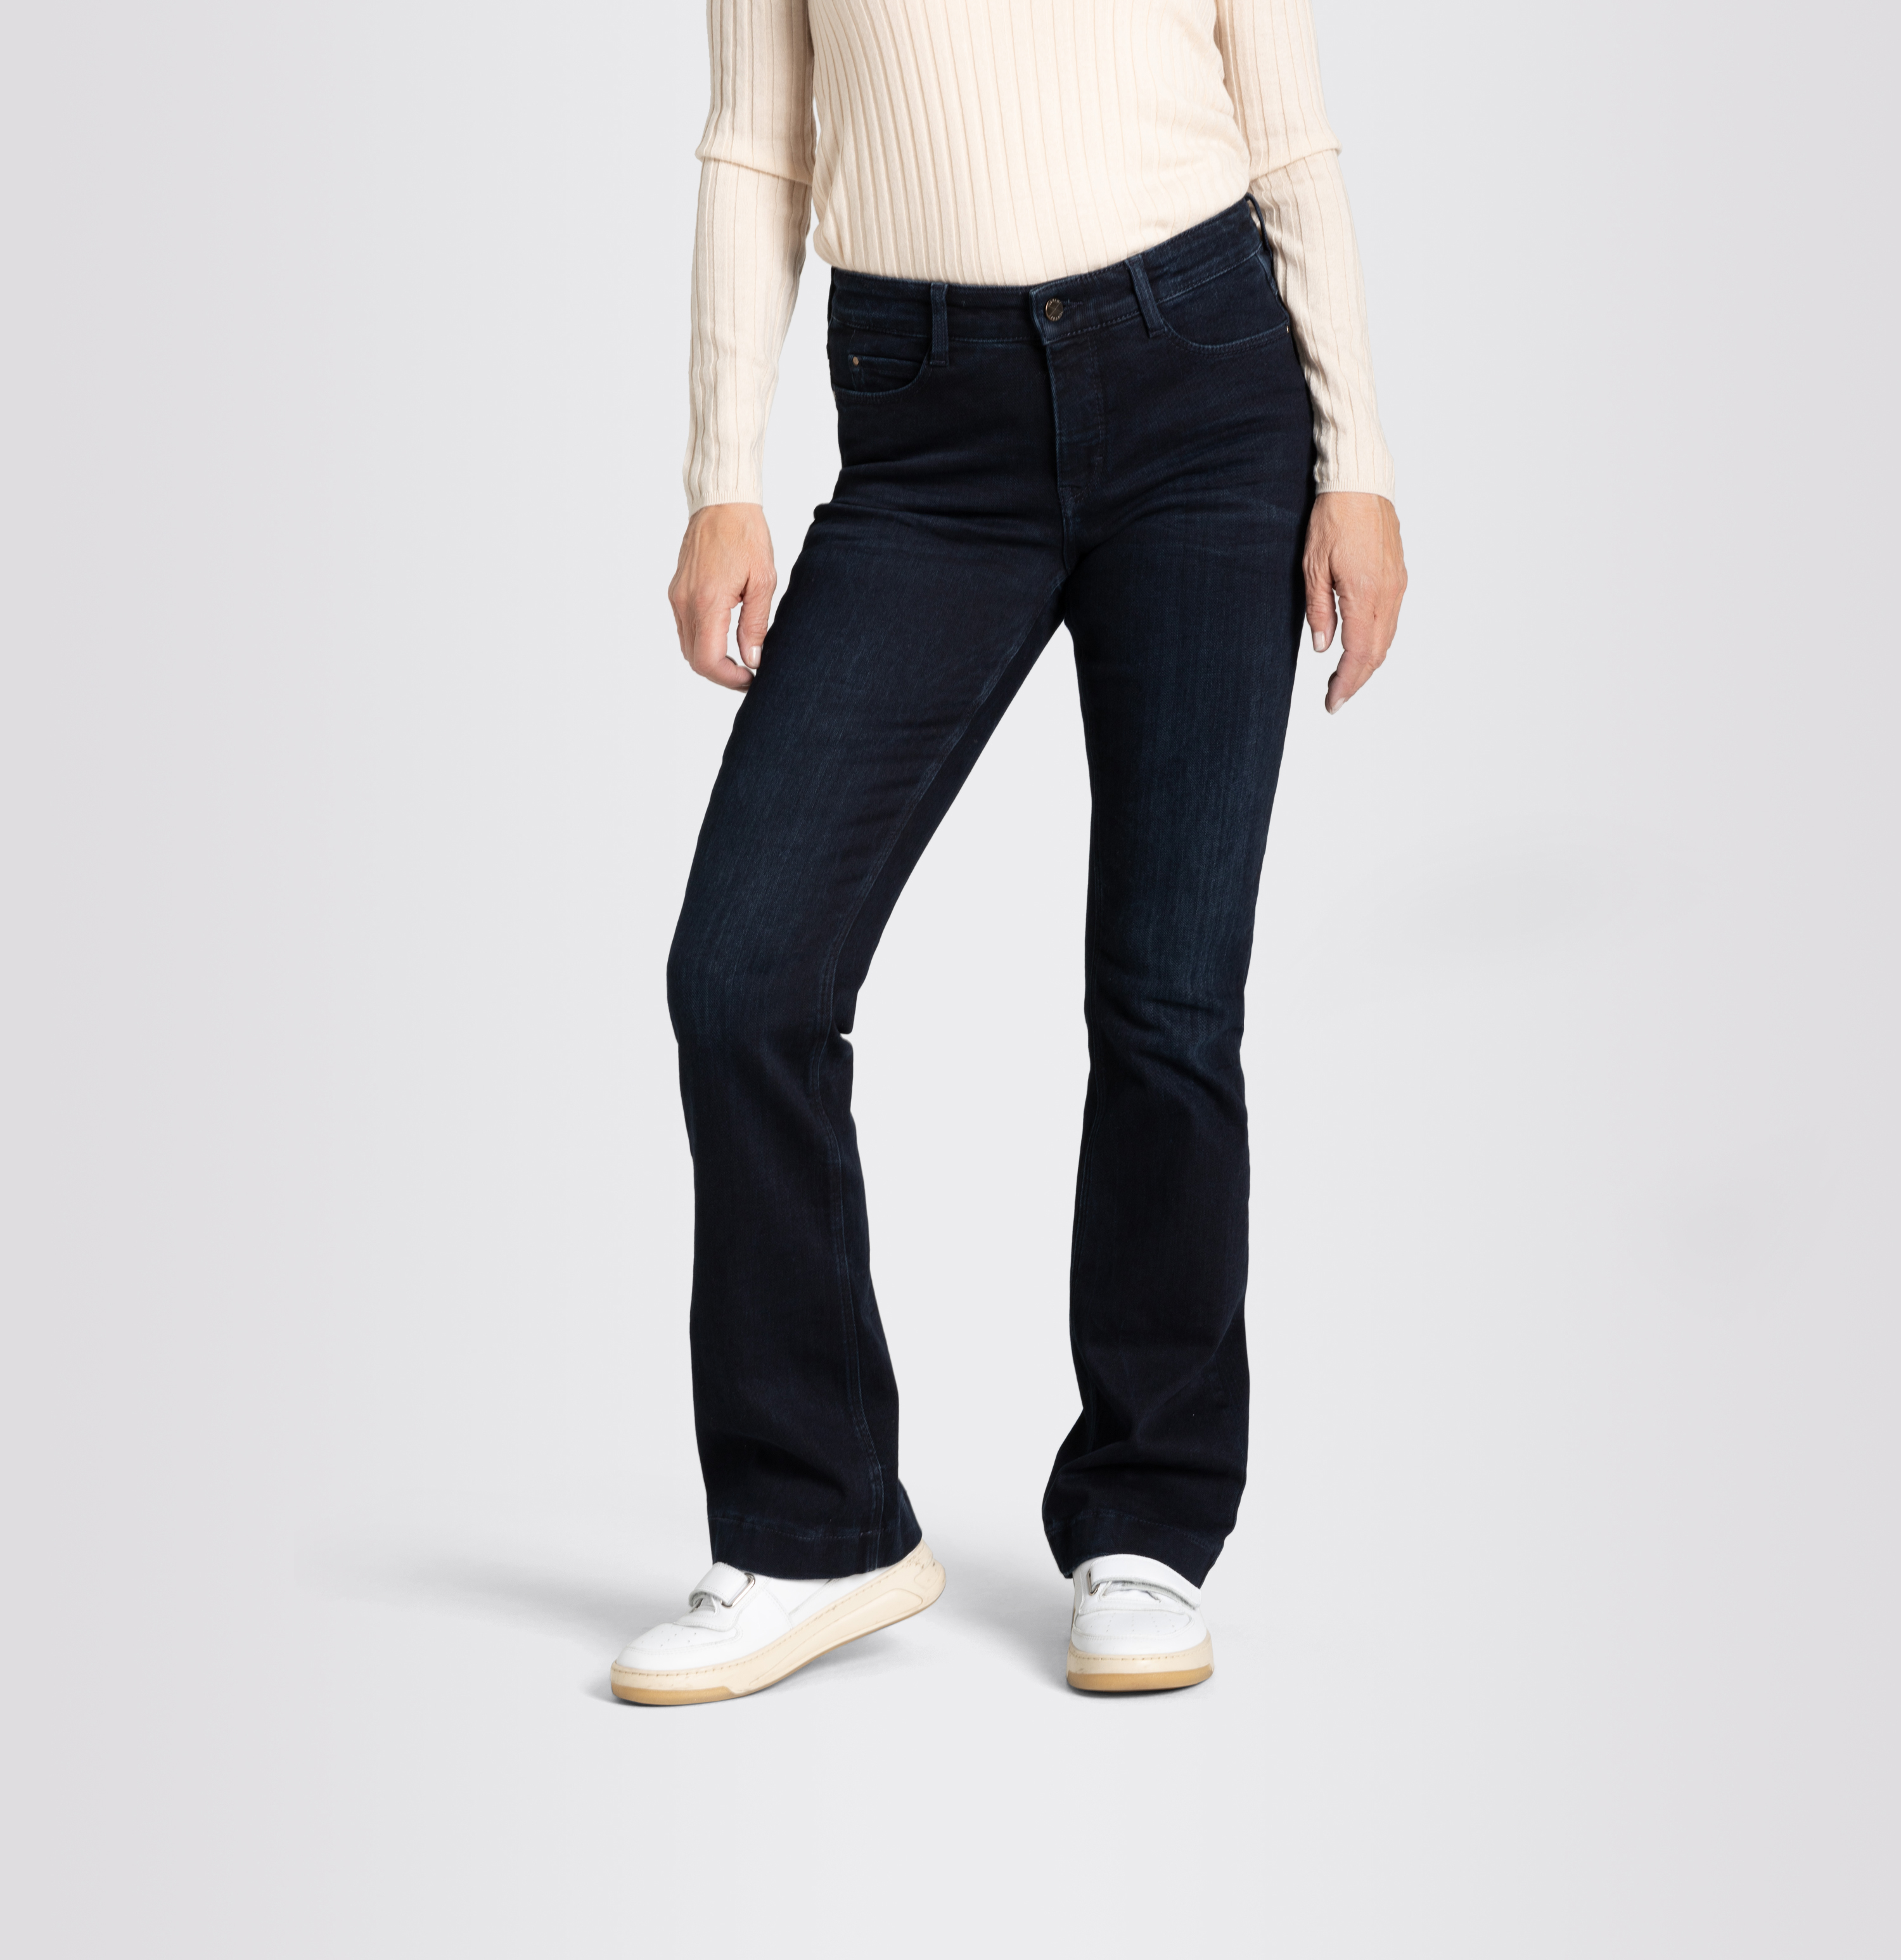 Boot Shop - Damenhose, | Authentic, Jeans MAC Dream D884 AT dunkelblau